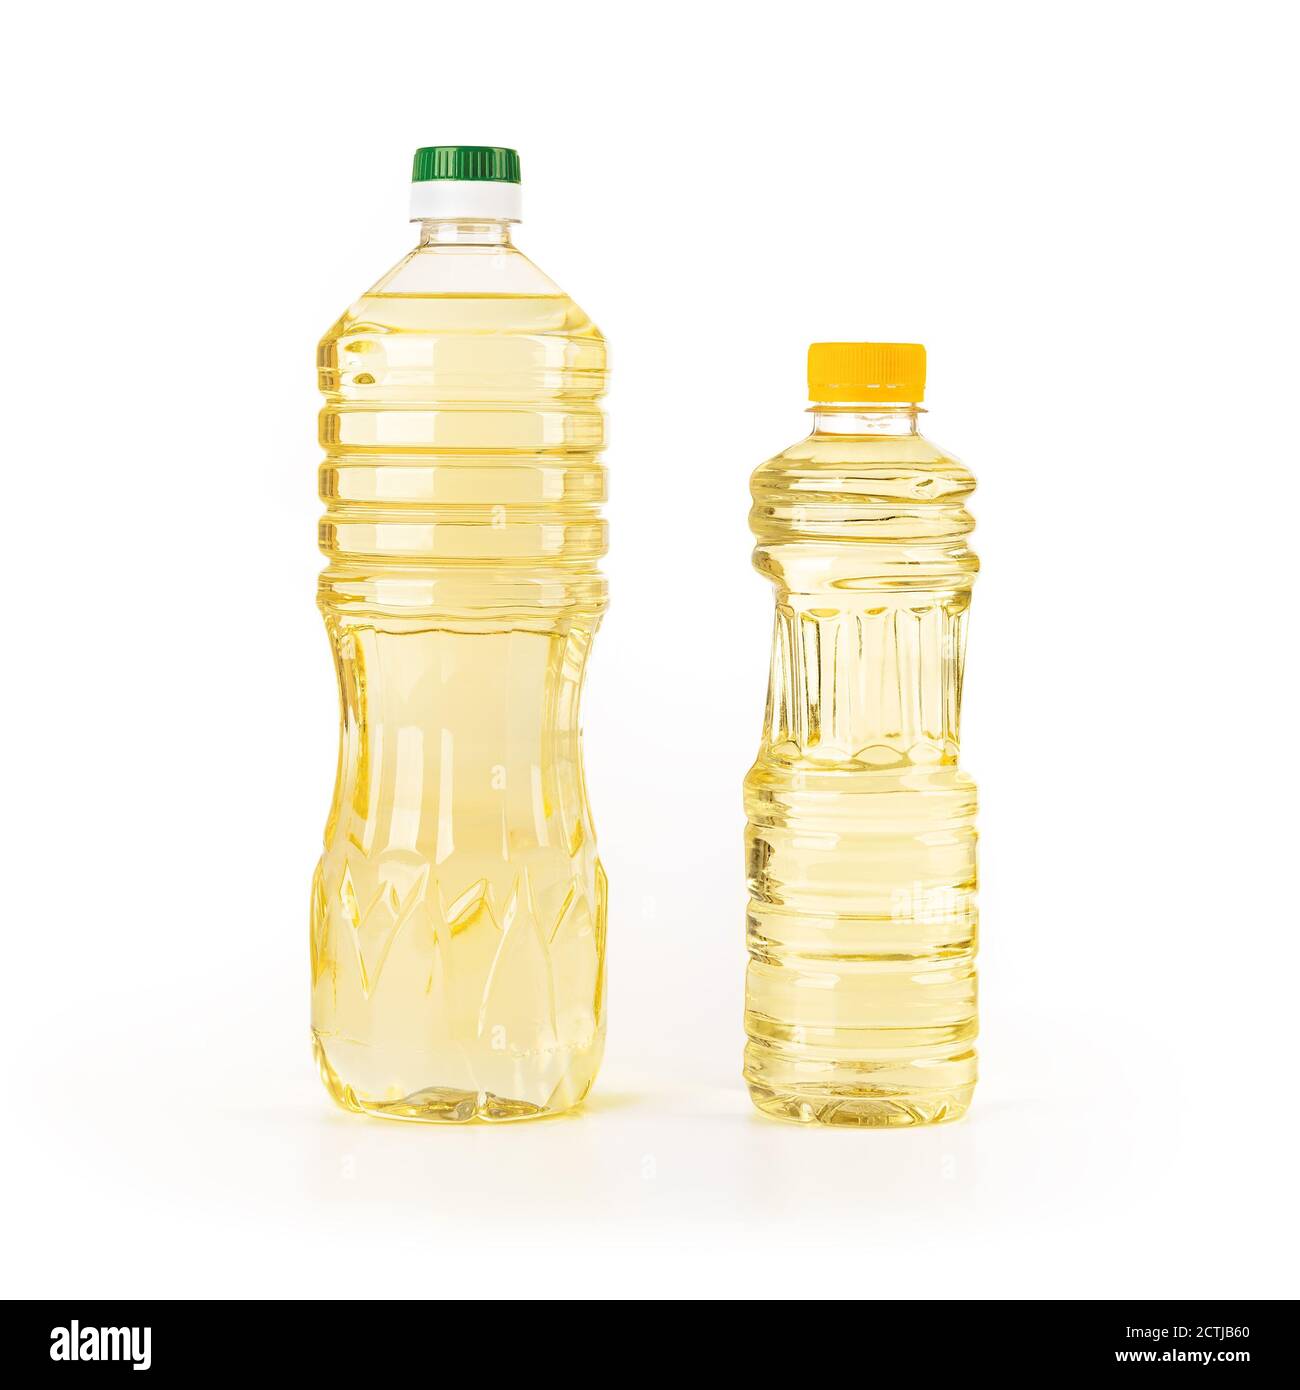 Dos botellas de aceite de girasol aisladas sobre fondo blanco. Aceite de girasol o vegetal amarillo en botellas de plástico transparentes de litro y medio litro. Fu Foto de stock